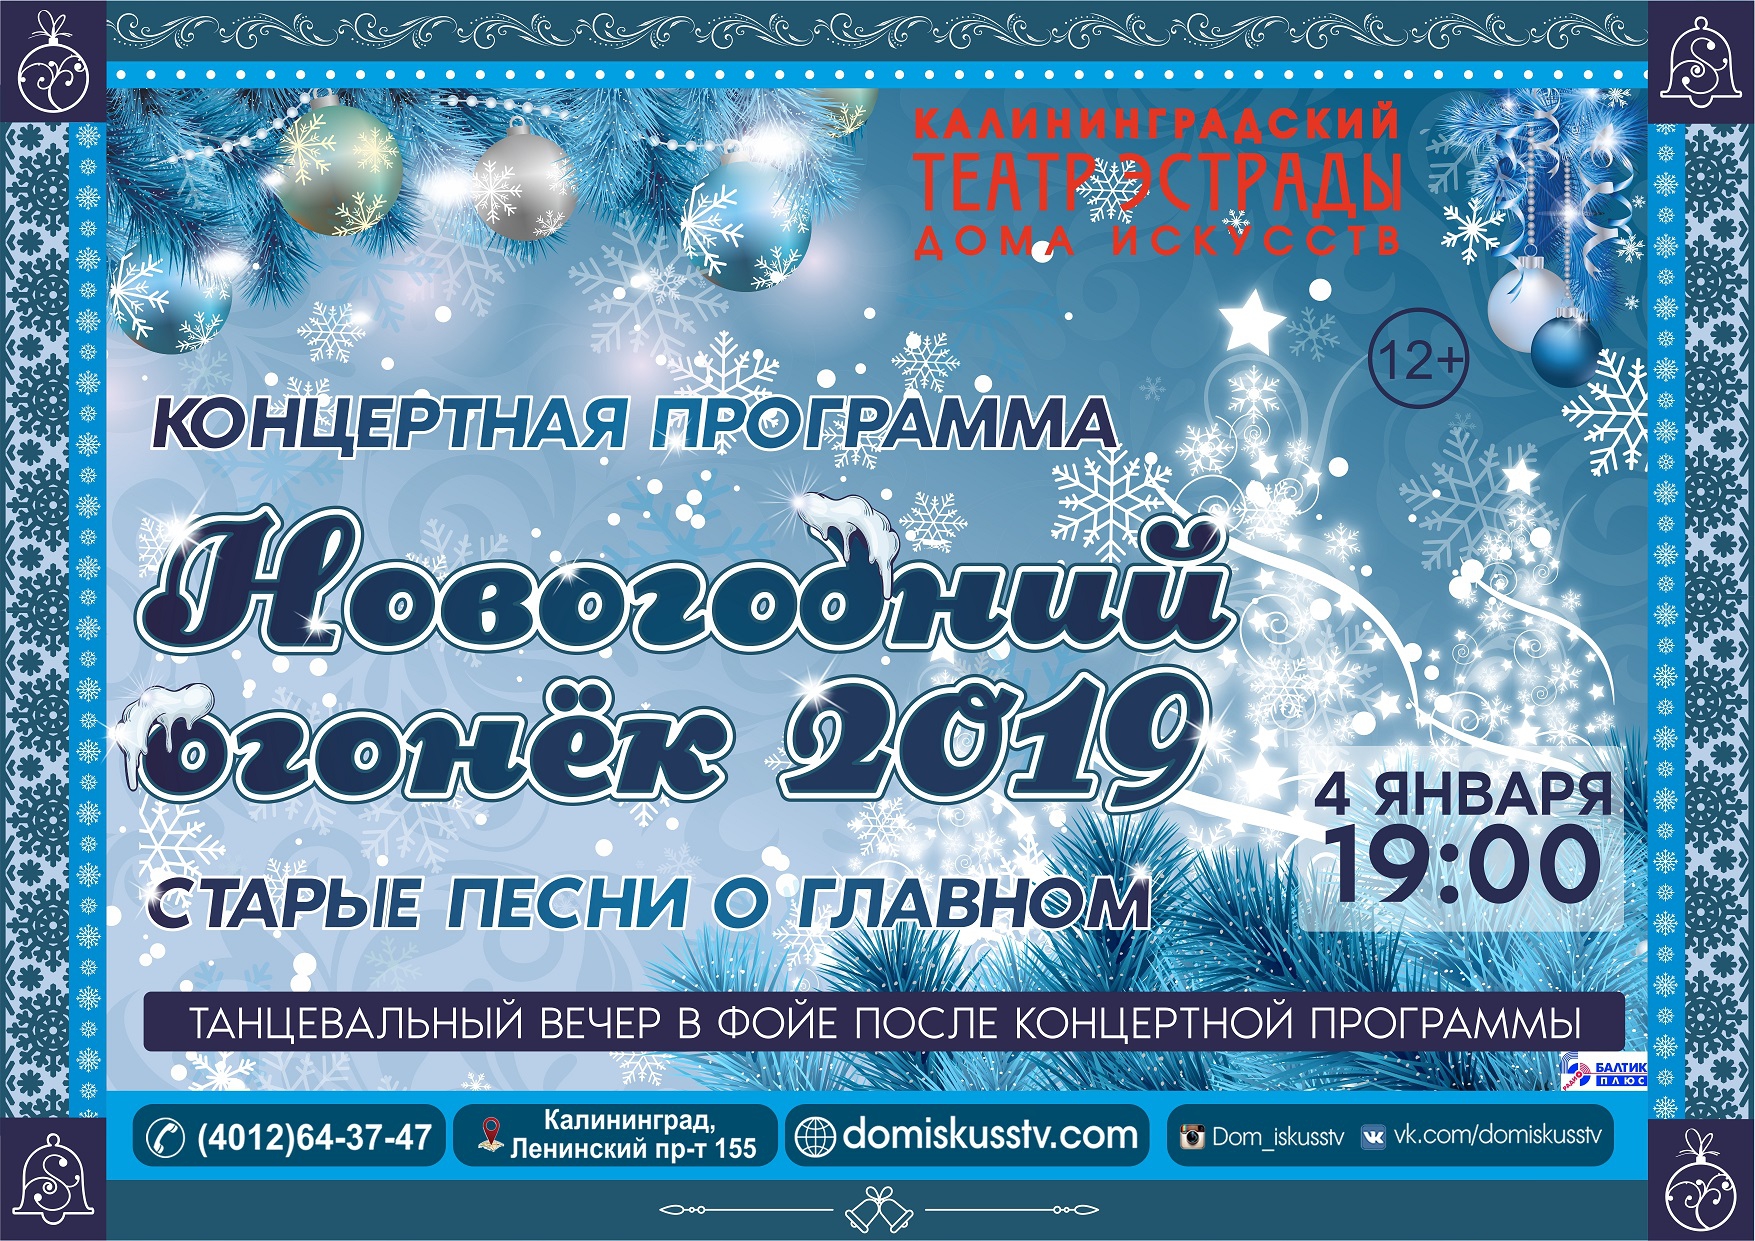 Концертная программа: Новогодний огонек 2019